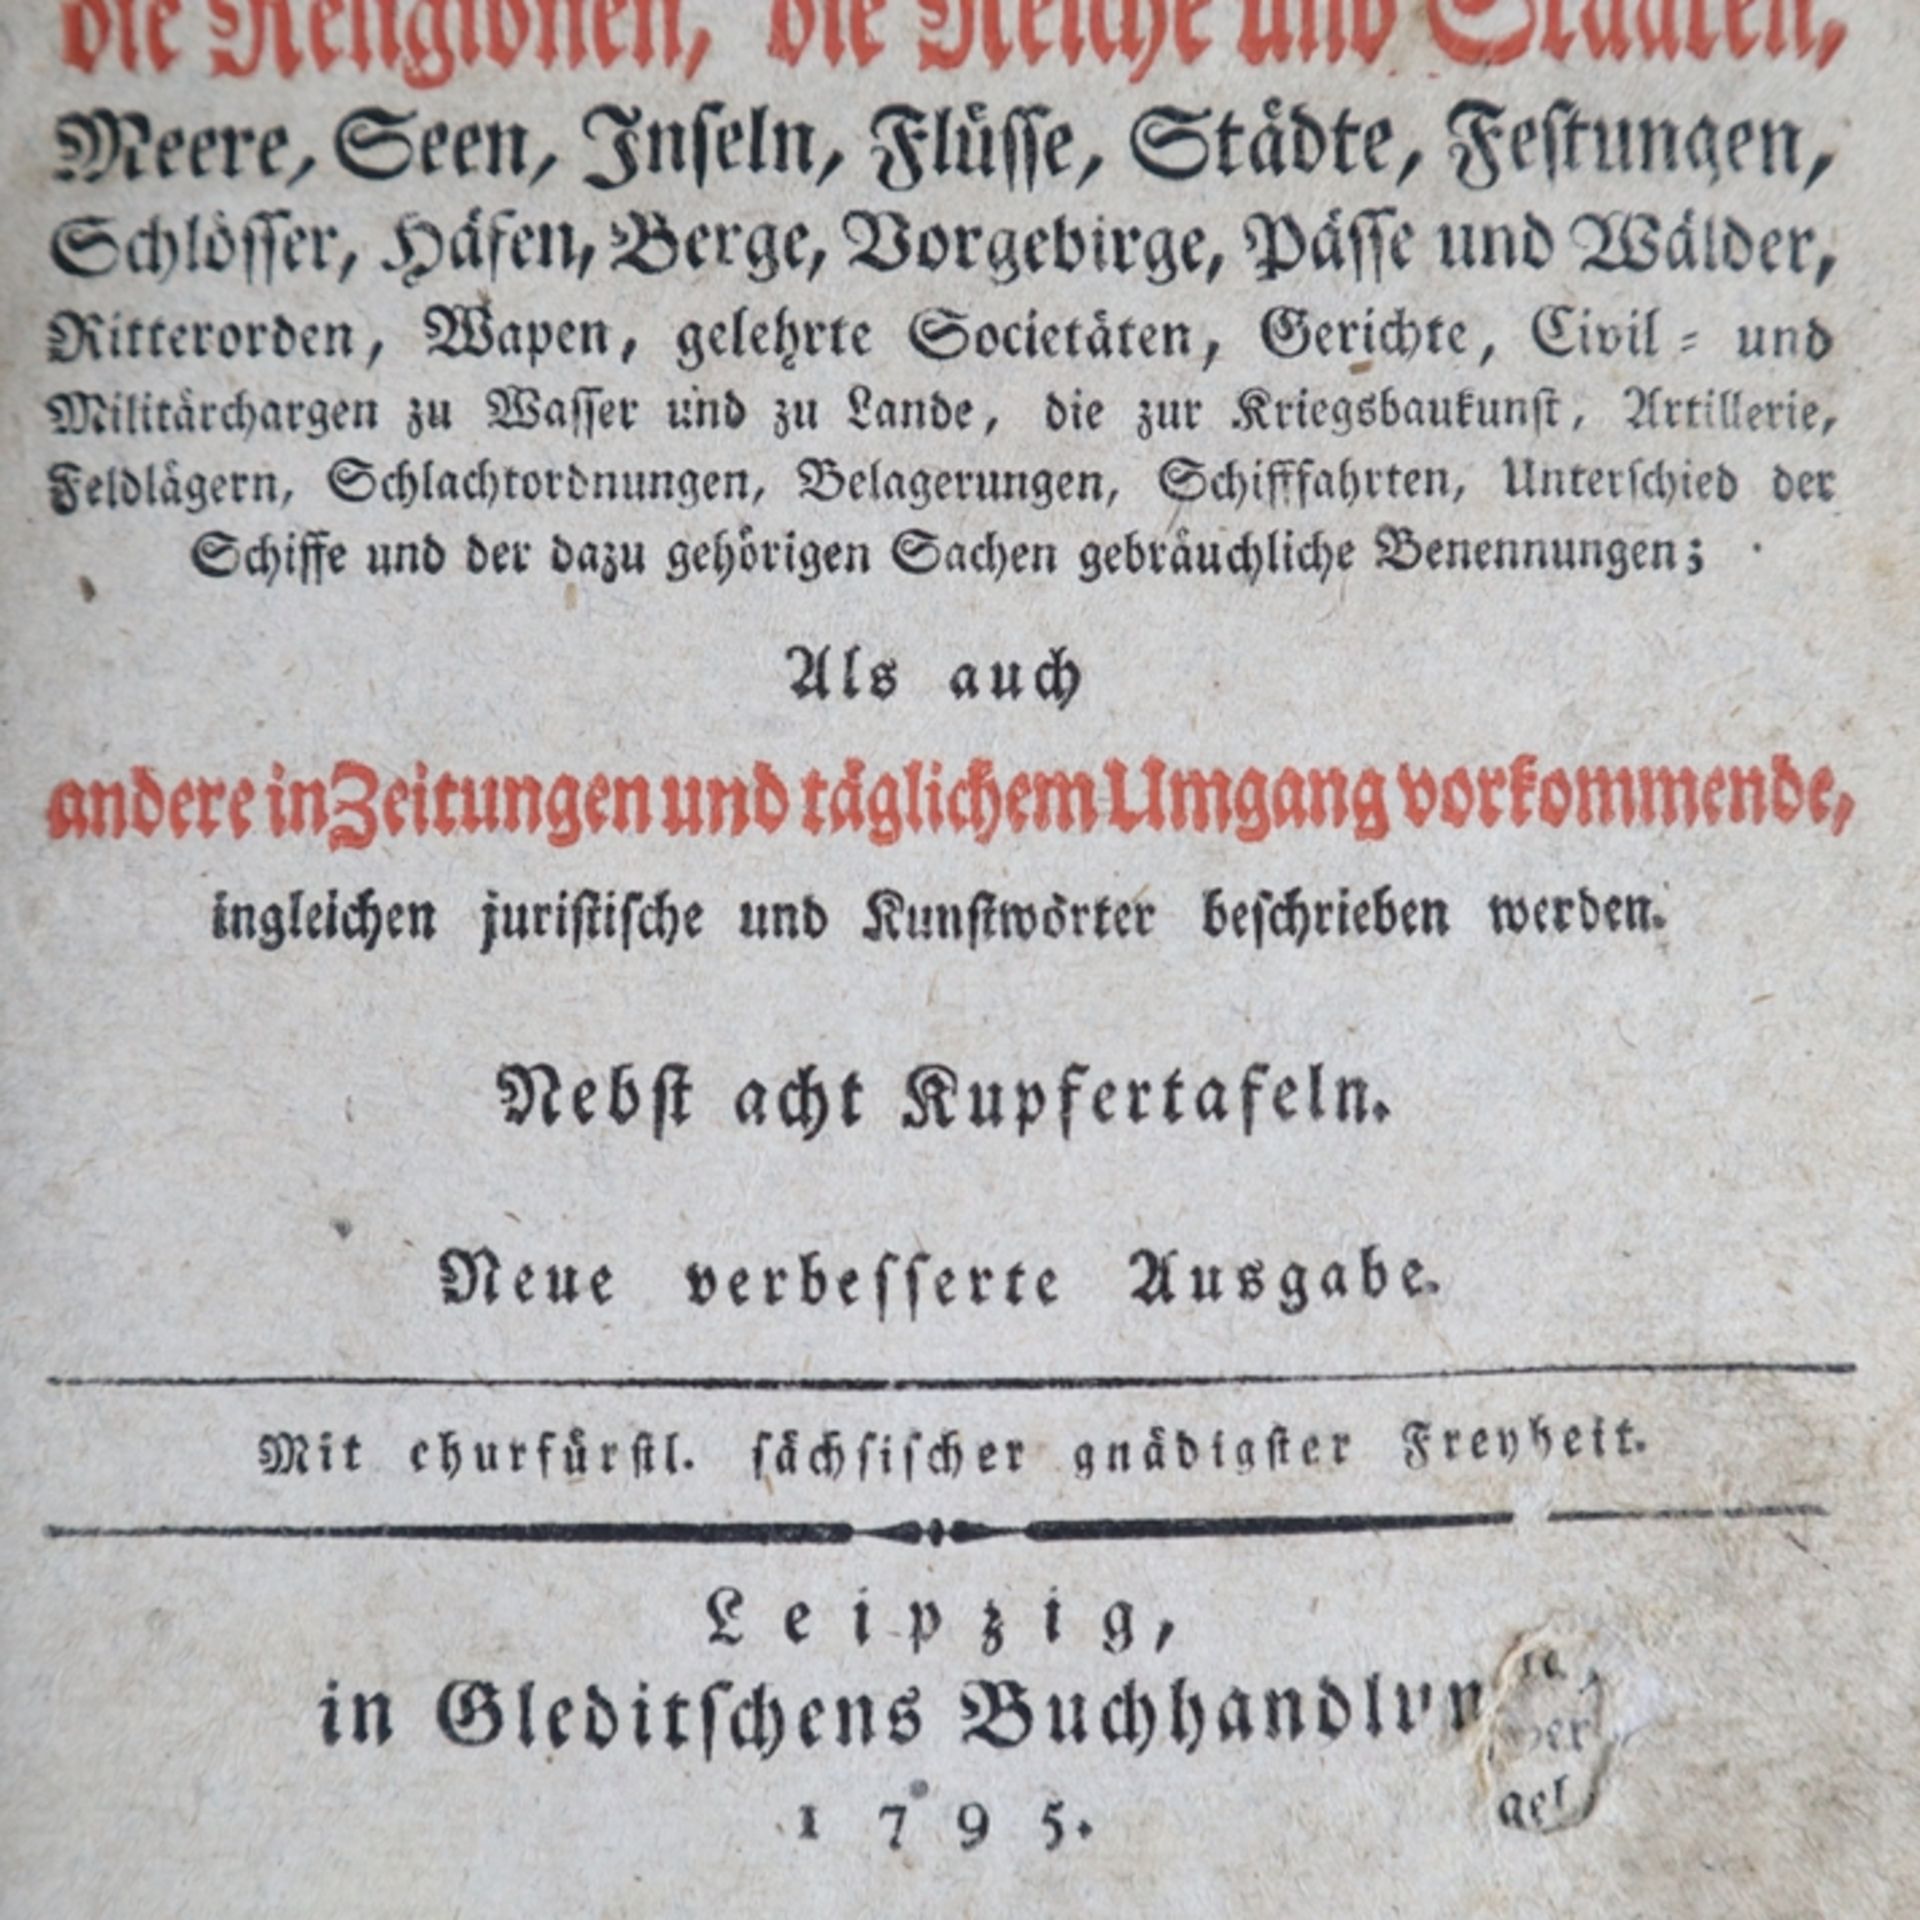 Hübner, Johann - Johann Hübners Reales Staats-Zeitungs-und Conversations-Lexicon, Gleditsch, - Bild 3 aus 12